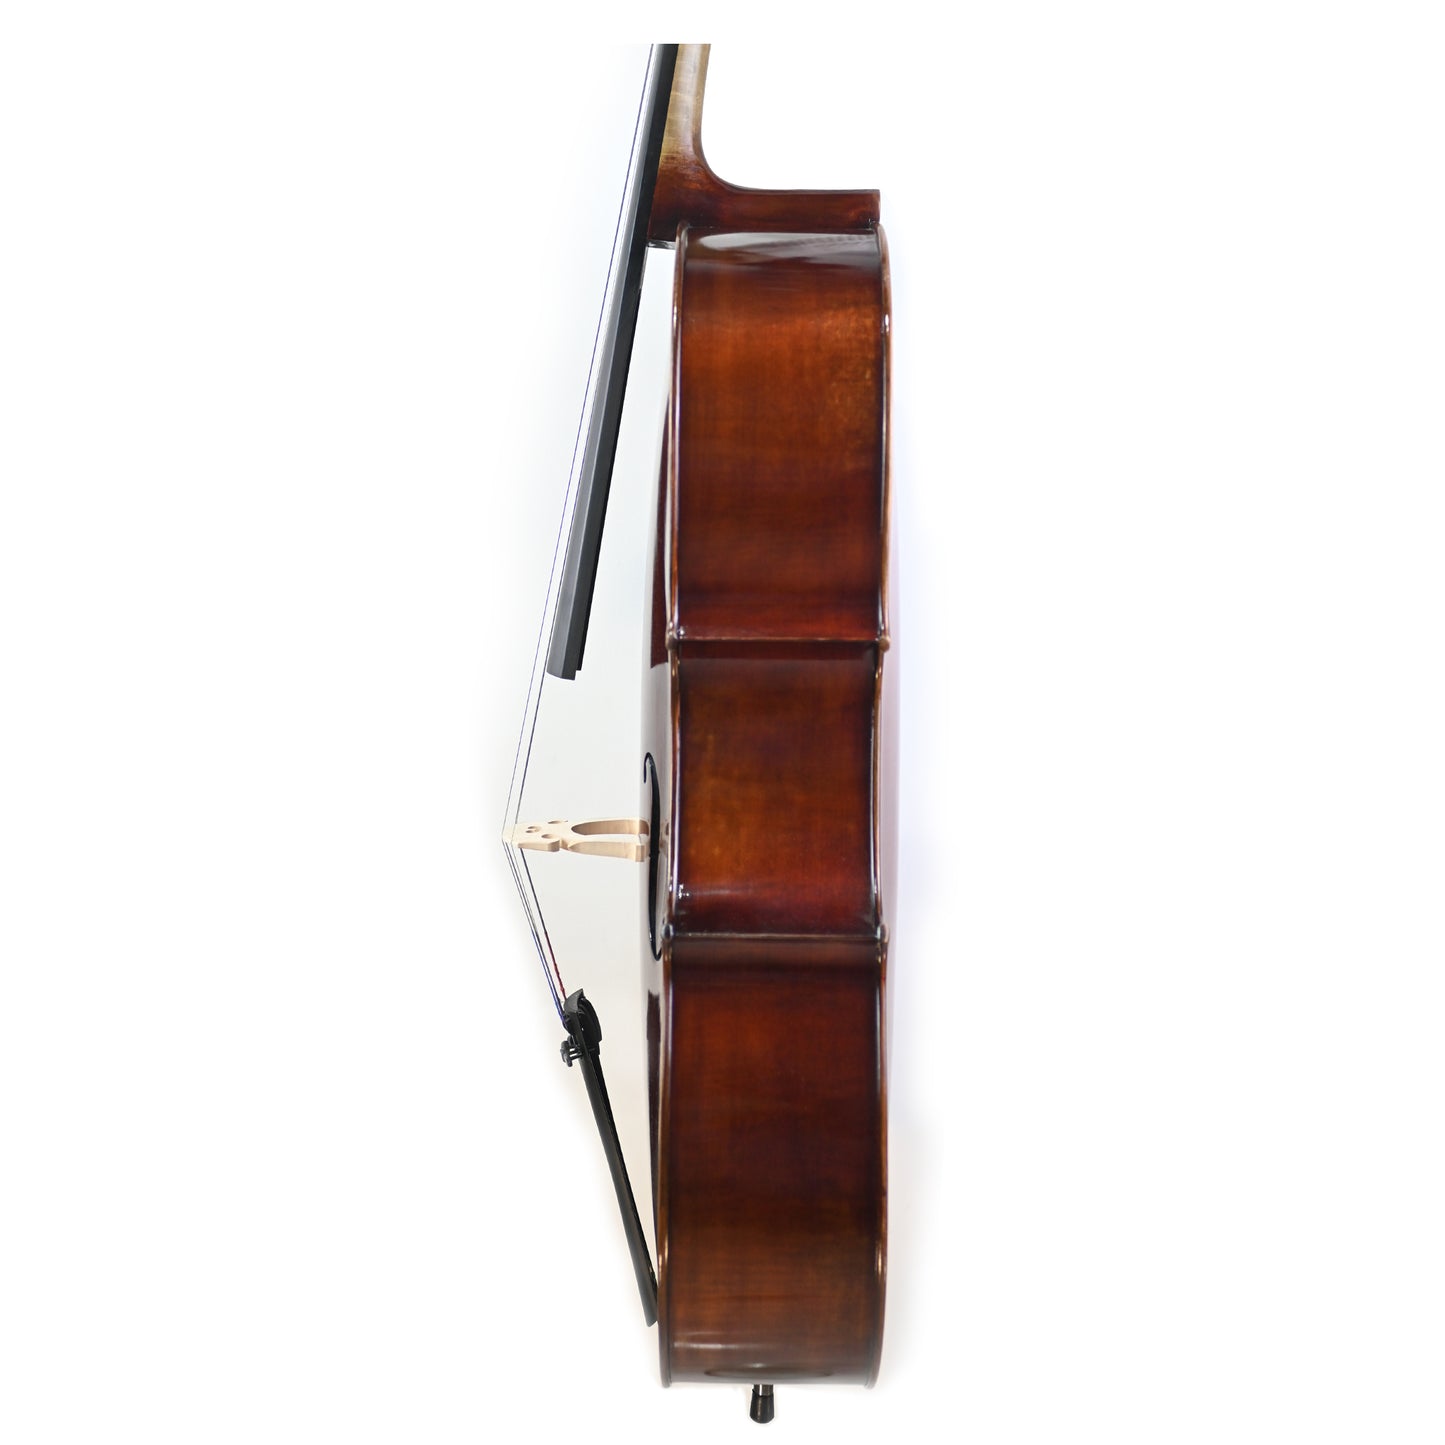 7026 beginner cello left rib